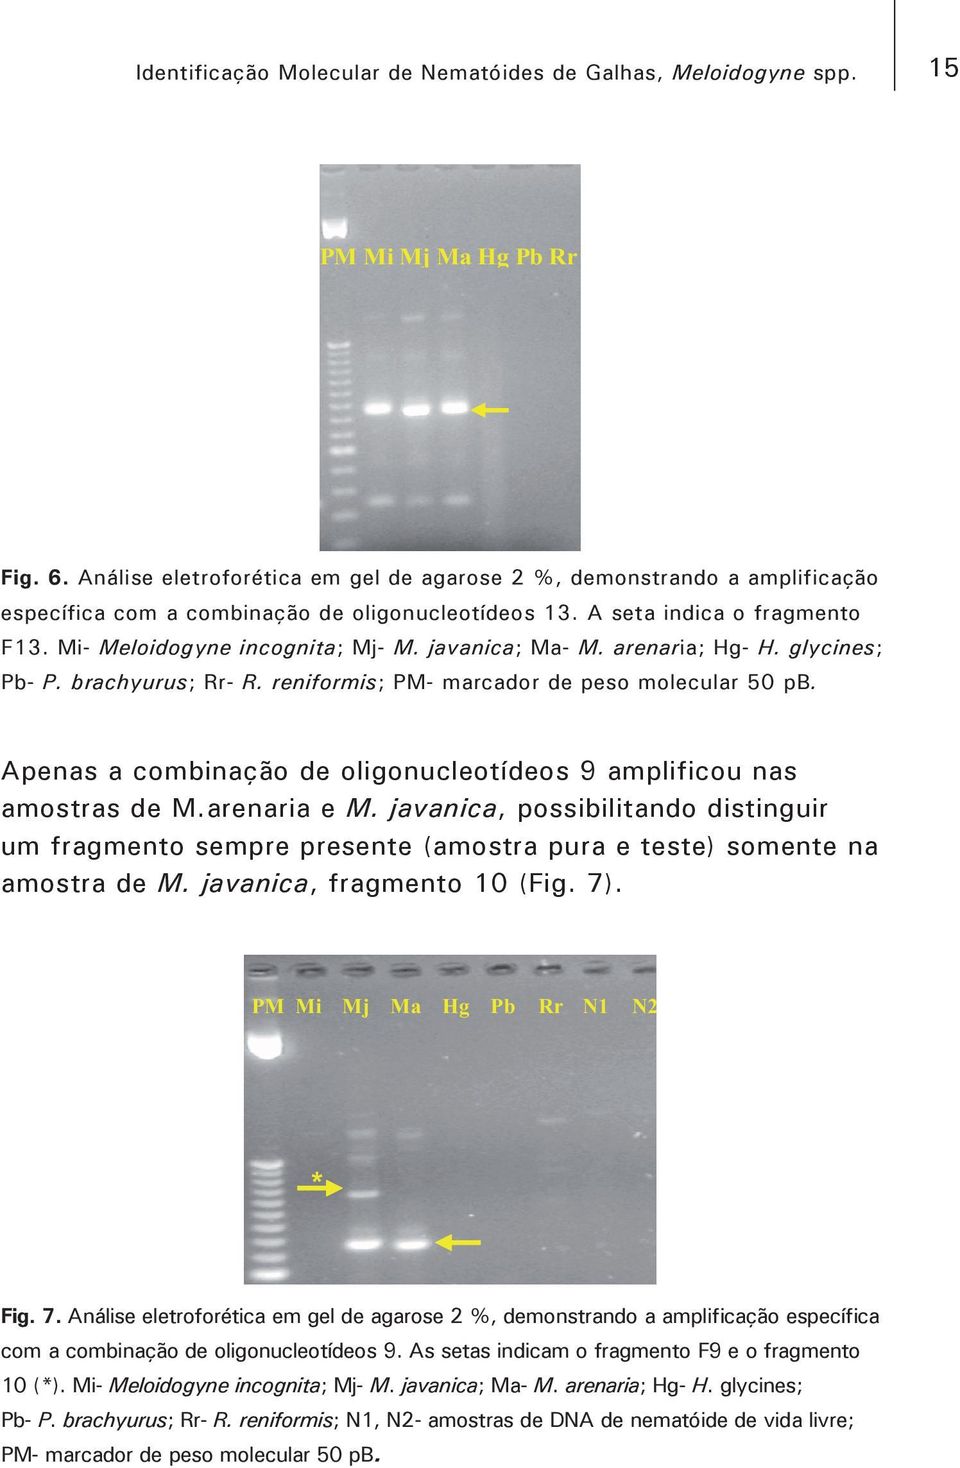 arenaria; Hg- H. glycines; Pb- P. brachyurus; Rr- R. reniformis; PM- marcador de peso molecular 50 pb. Apenas a combinação de oligonucleotídeos 9 amplificou nas amostras de M.arenaria e M.